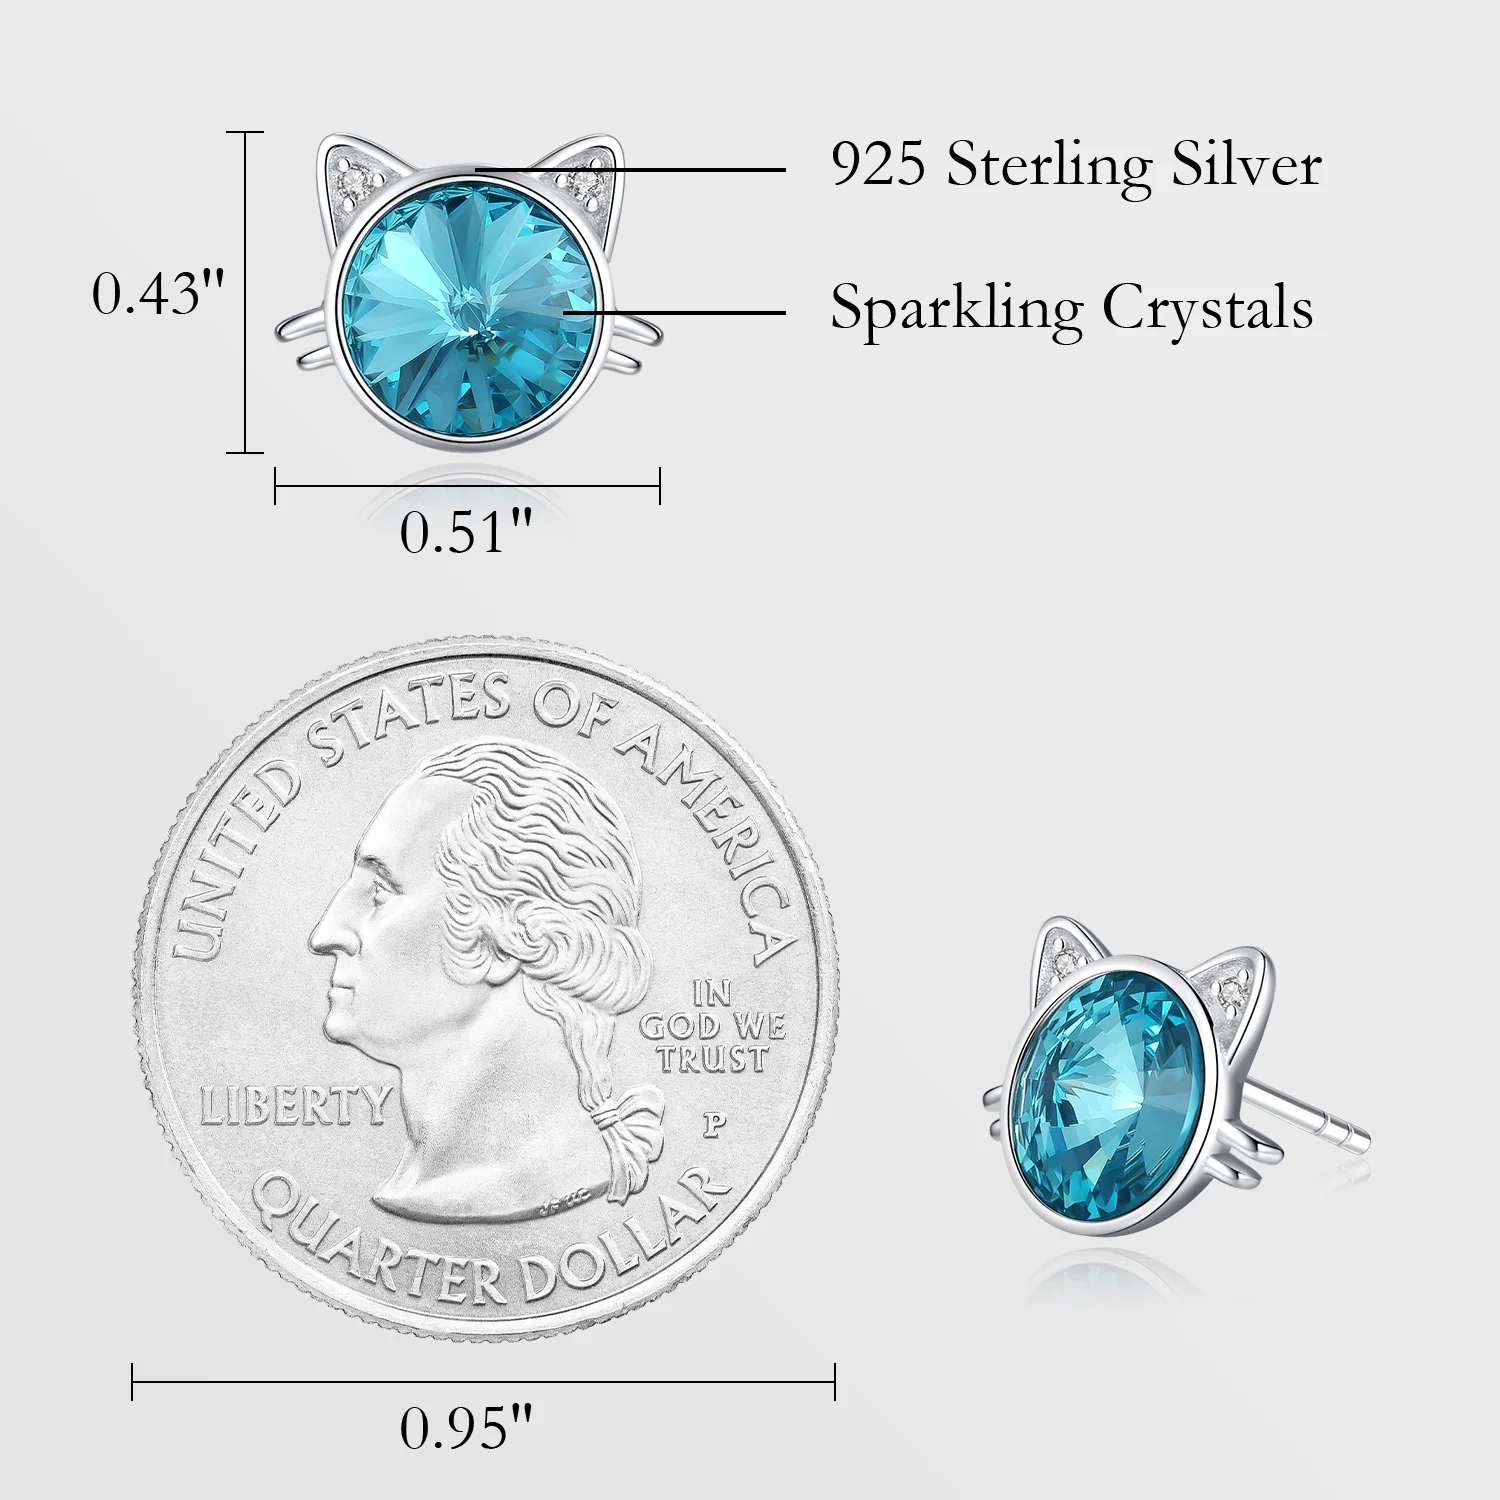 CDE YE1876 Luxury Jewelry Women 925 Sterling Silver Colour Crystal Rhoduim Plated Earrings Cute Animal Stud Earrings